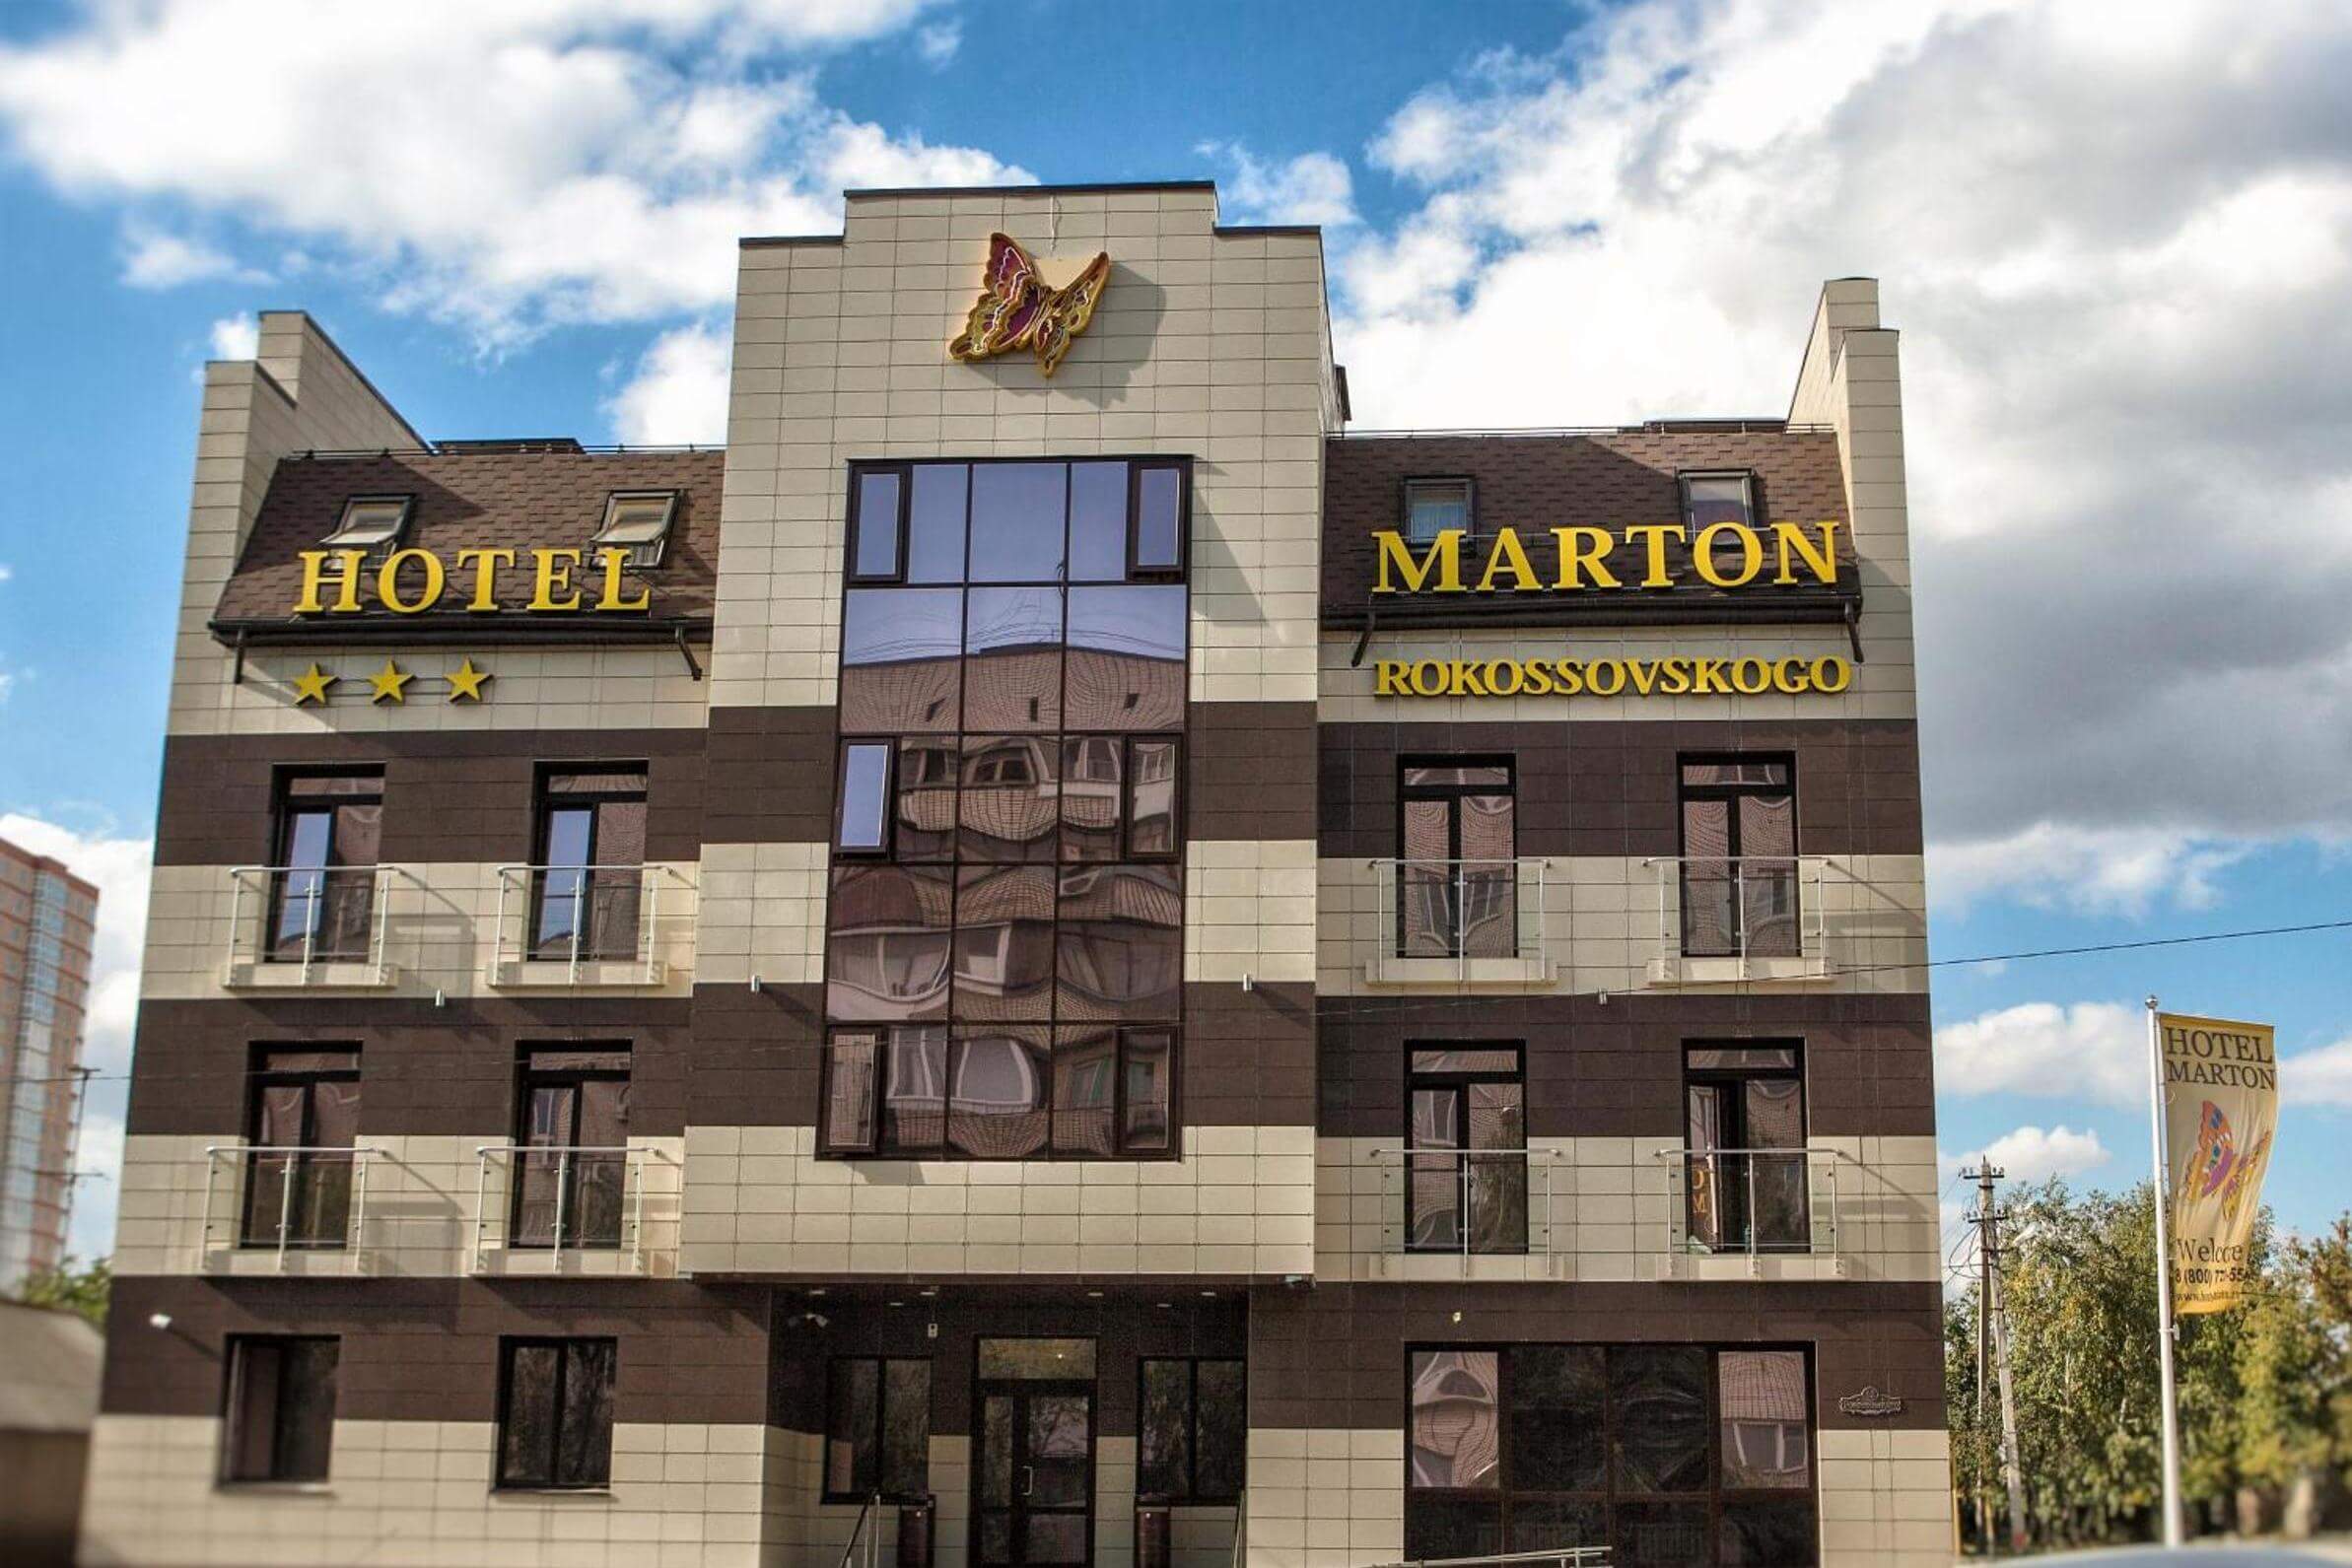 Мартон Рокоссовского. Здание отеля, фасад облицован декоративными панелями серого и коричневого цвета.